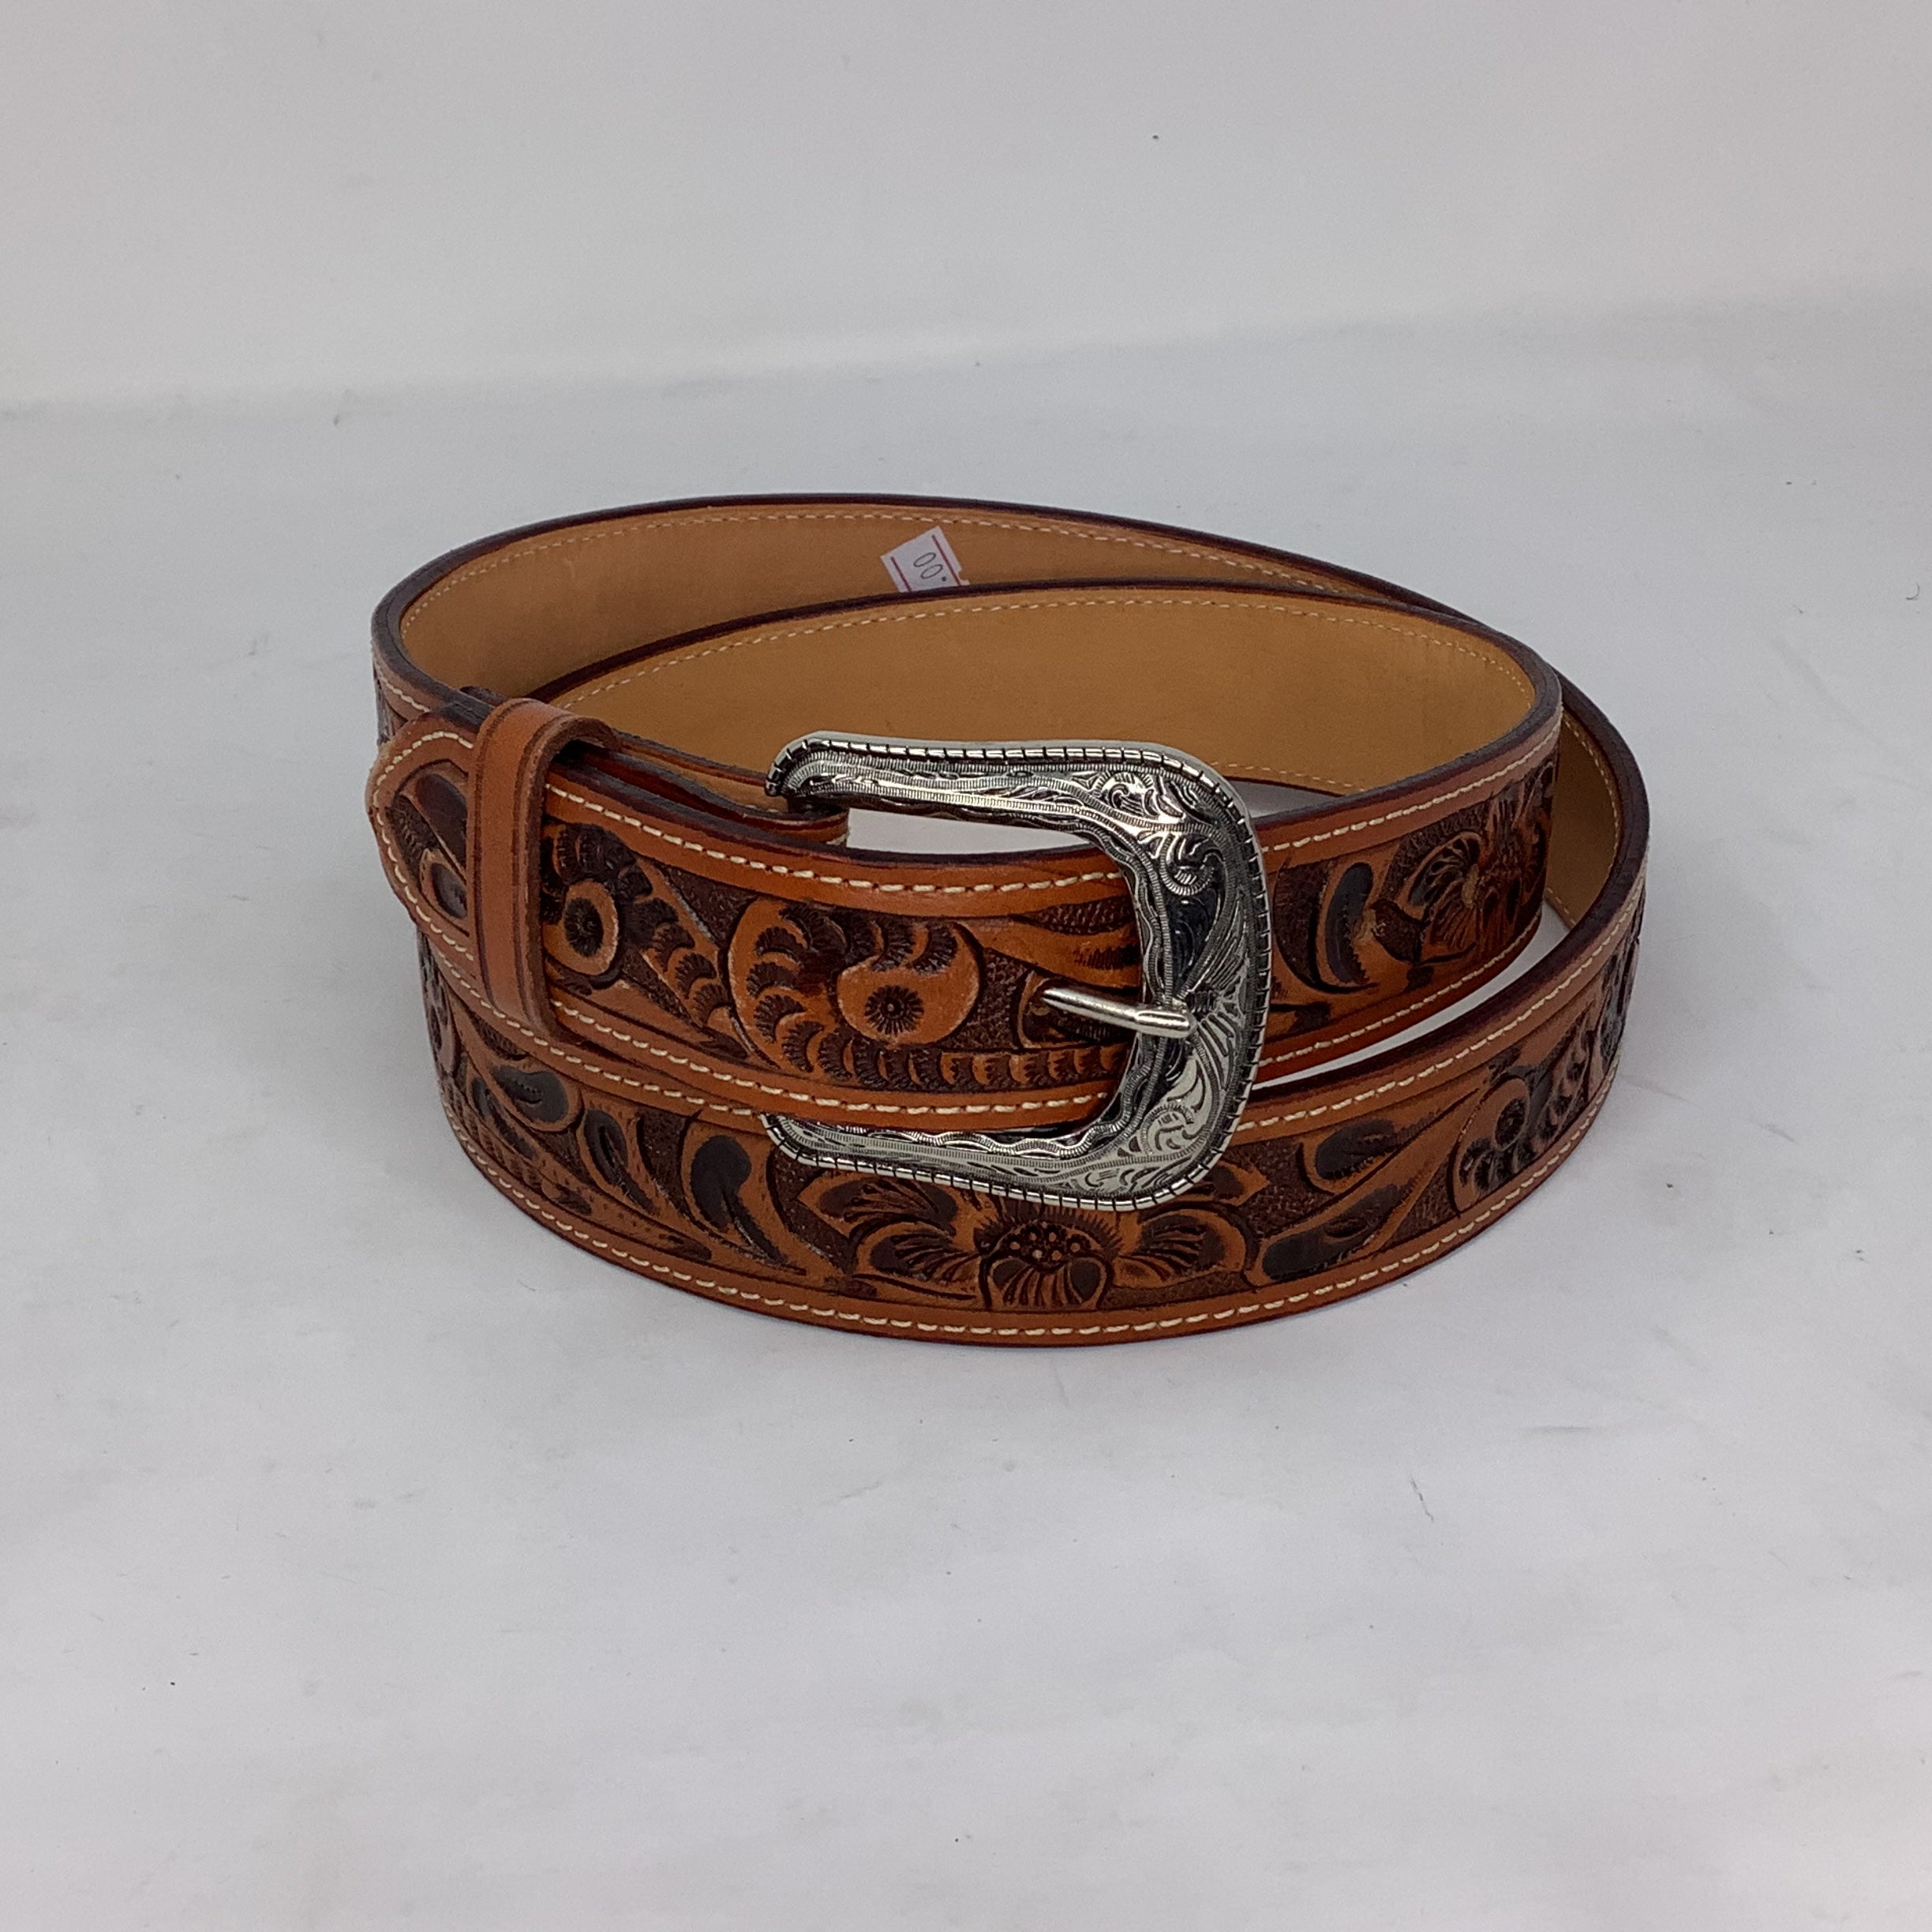 “James” Stamped Leather Belt